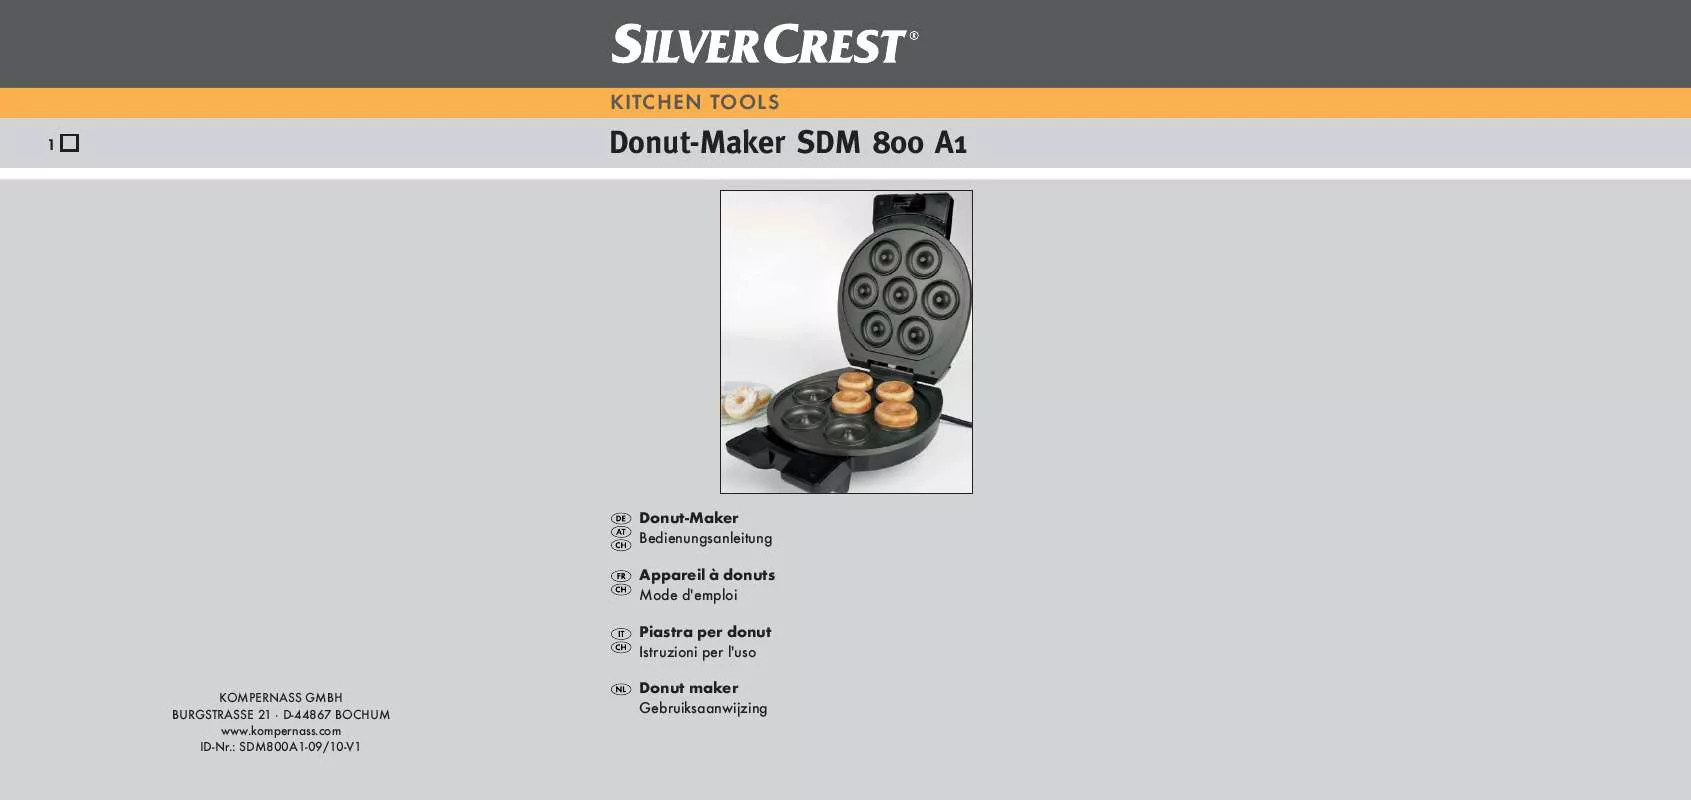 Mode d'emploi SILVERCREST SDM 800 A1 DOUGHNUT MAKER